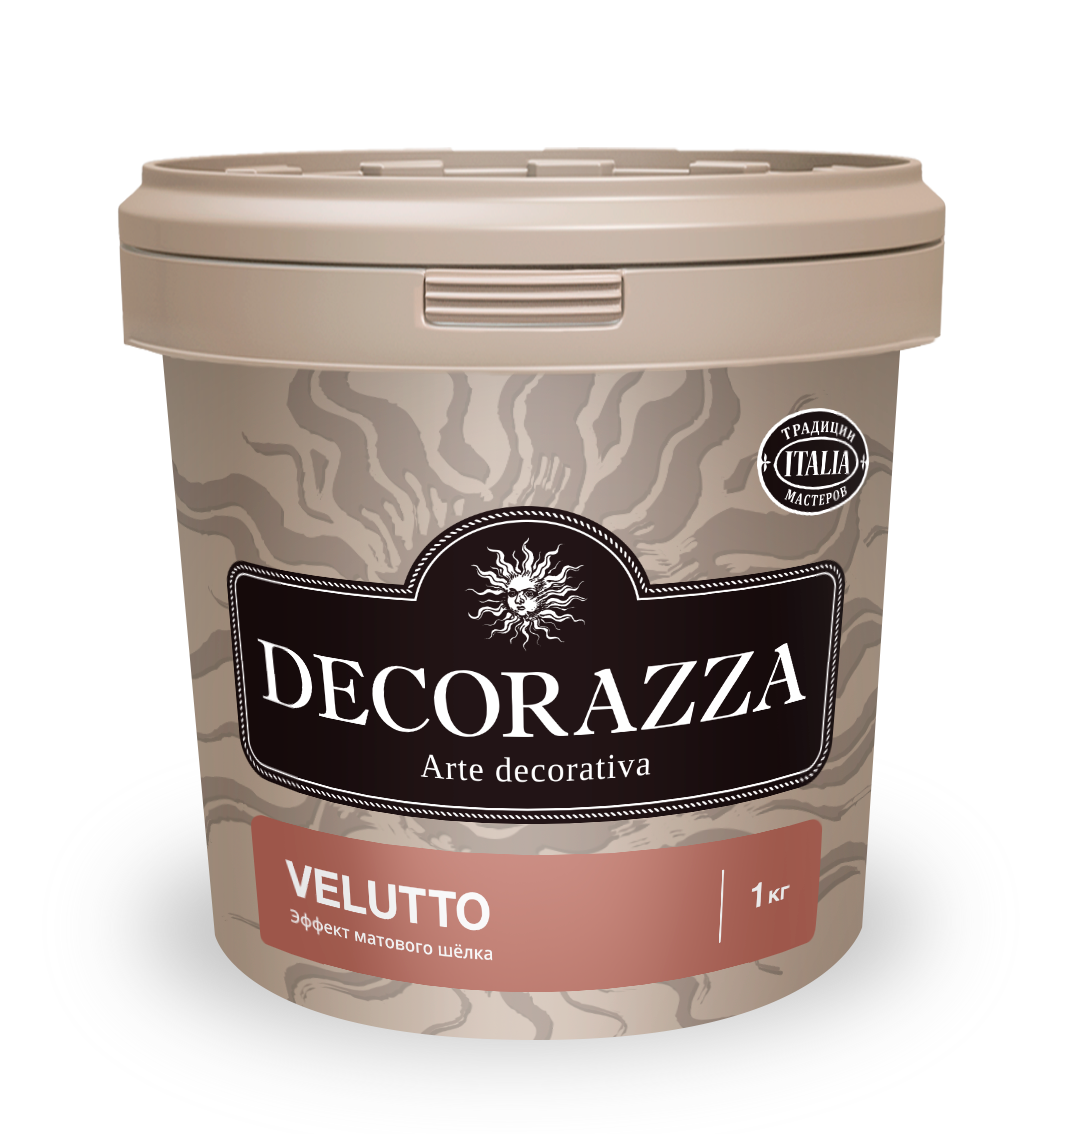 Декоративная штукатурка Decorazza Velluto VT 001, 1 кг декоративная штукатурка эффект натурального шелка decorazza seta st 800 золото 1 кг